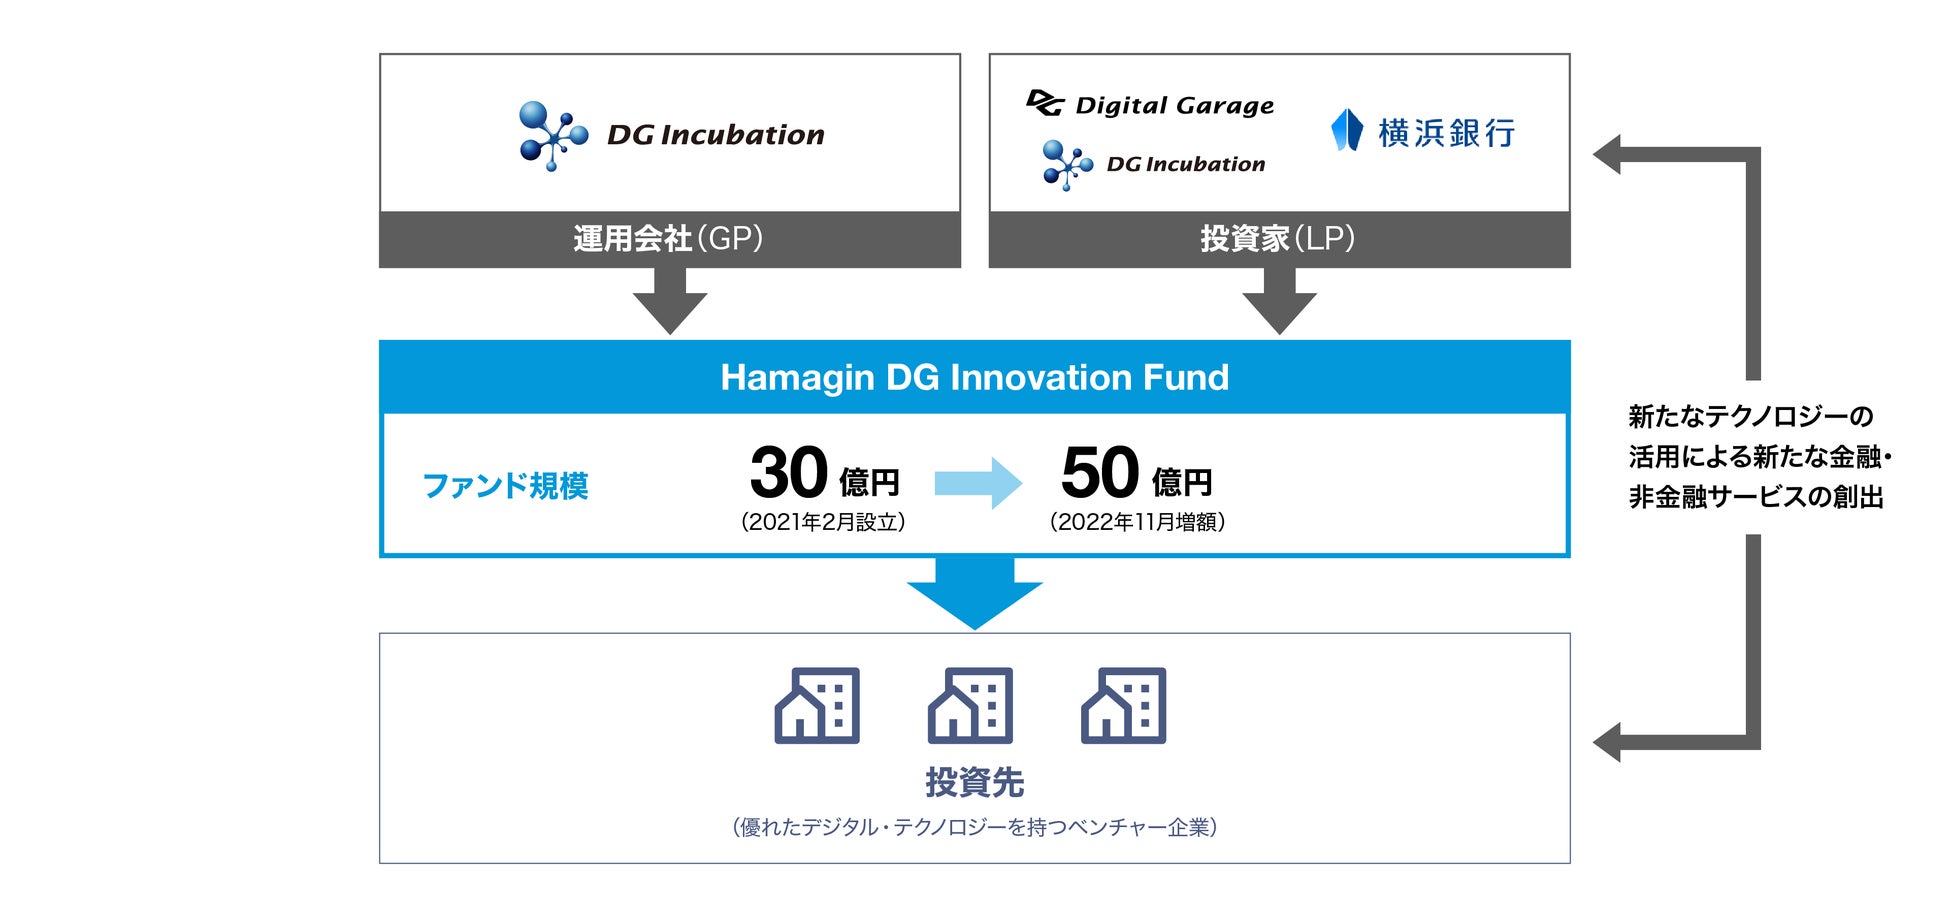 デジタルガレージと横浜銀行、CVCファンド「Hamagin DG Innovation Fund」の増額を発表